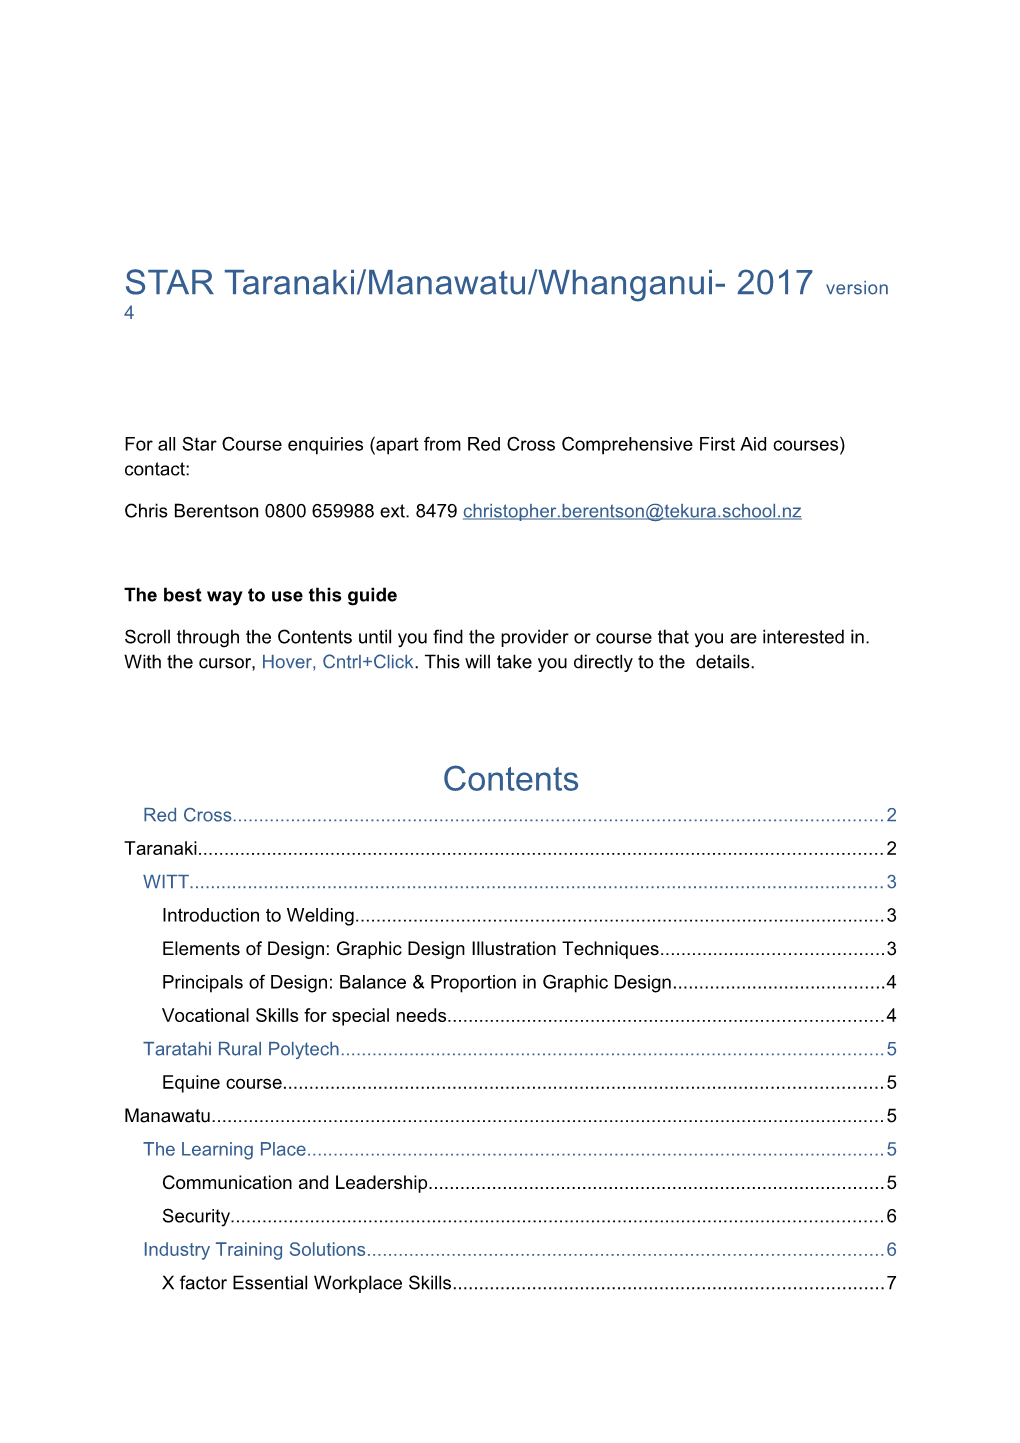 STAR Taranaki/Manawatu/Whanganui- 2017 Version 4